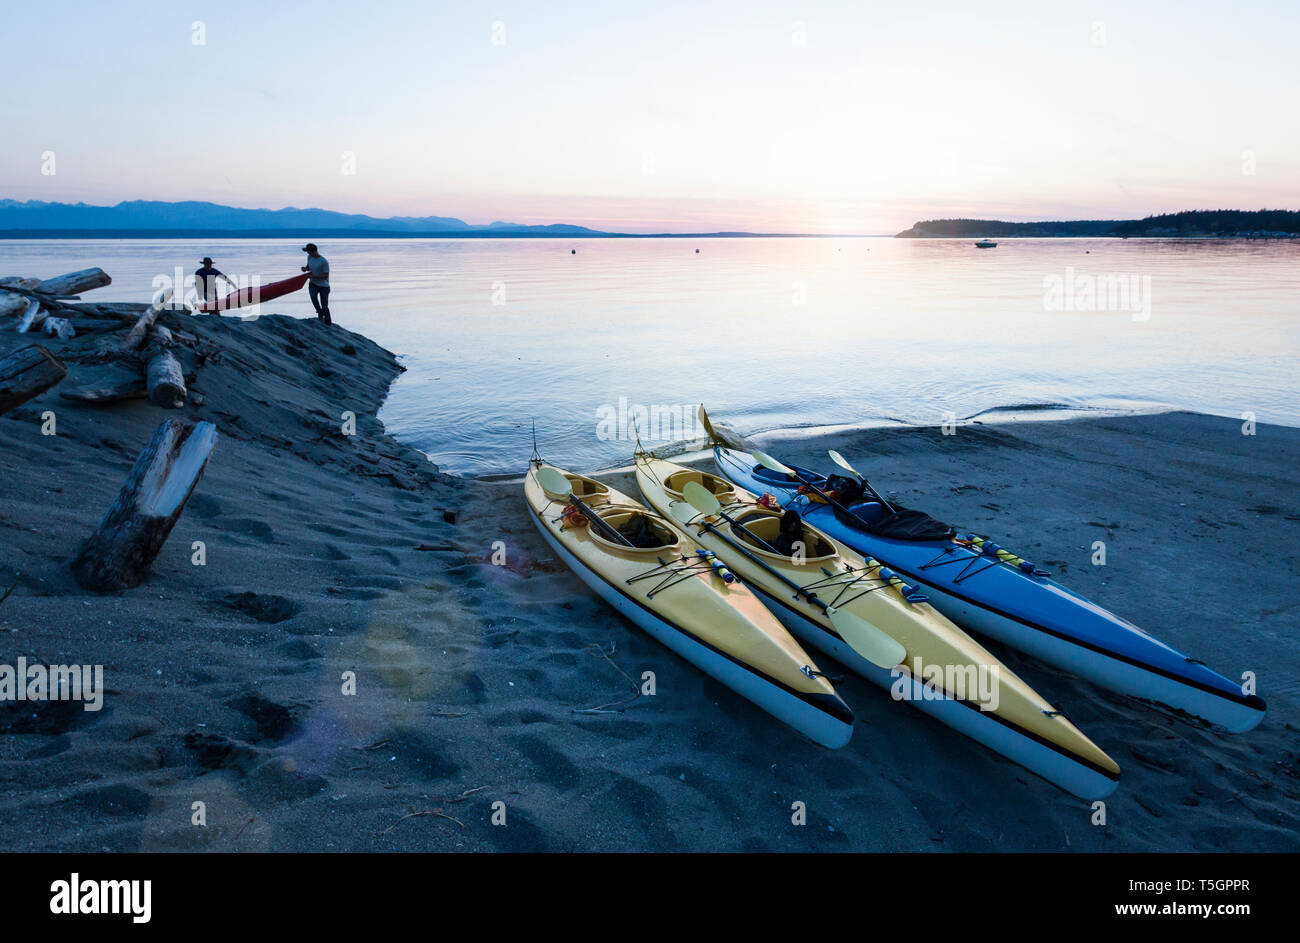 Menschen Männer Freunde Kajakfahren im Meer, die Boote am Strand bei Sonnenuntergang. Whidbey Island, Washington, United States Abenteuer im freien Wasser Sport reisen. Stockfoto